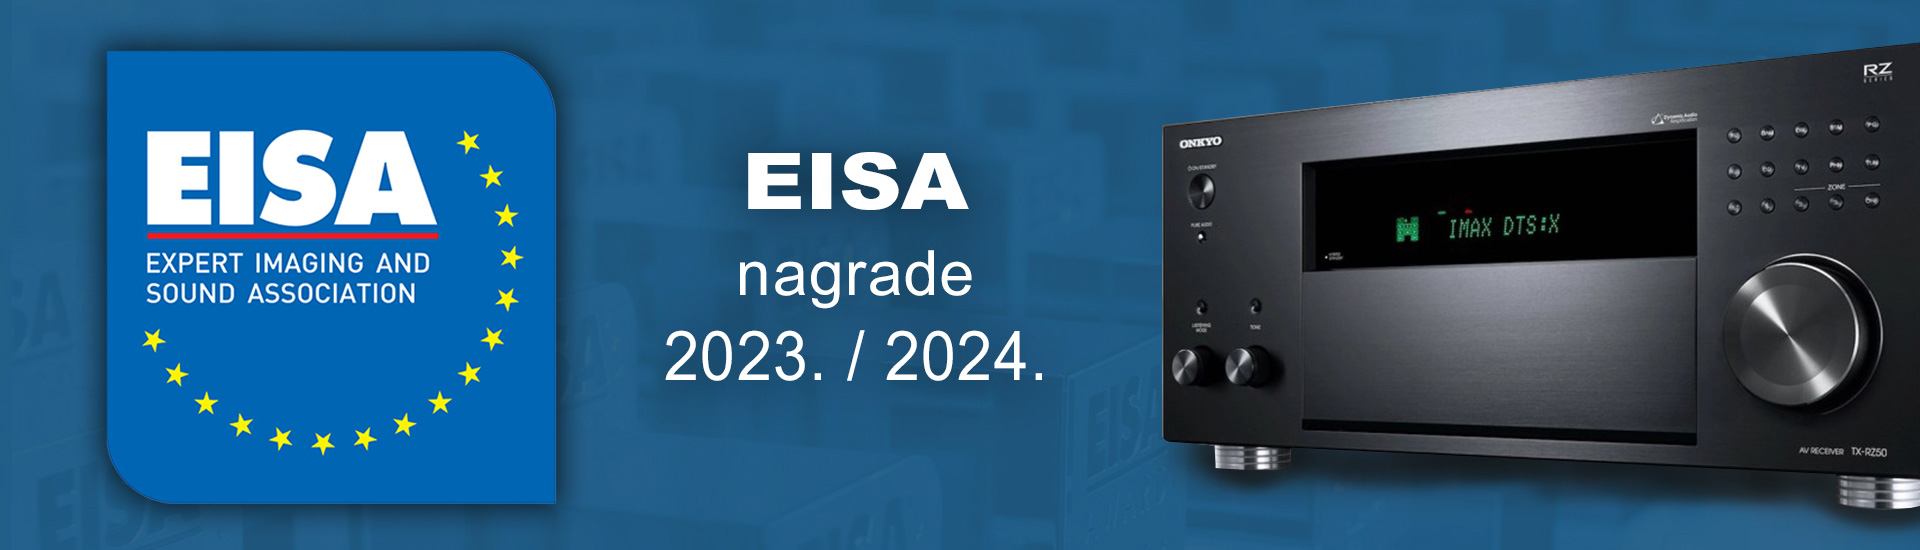 EISA awards 2023-2024